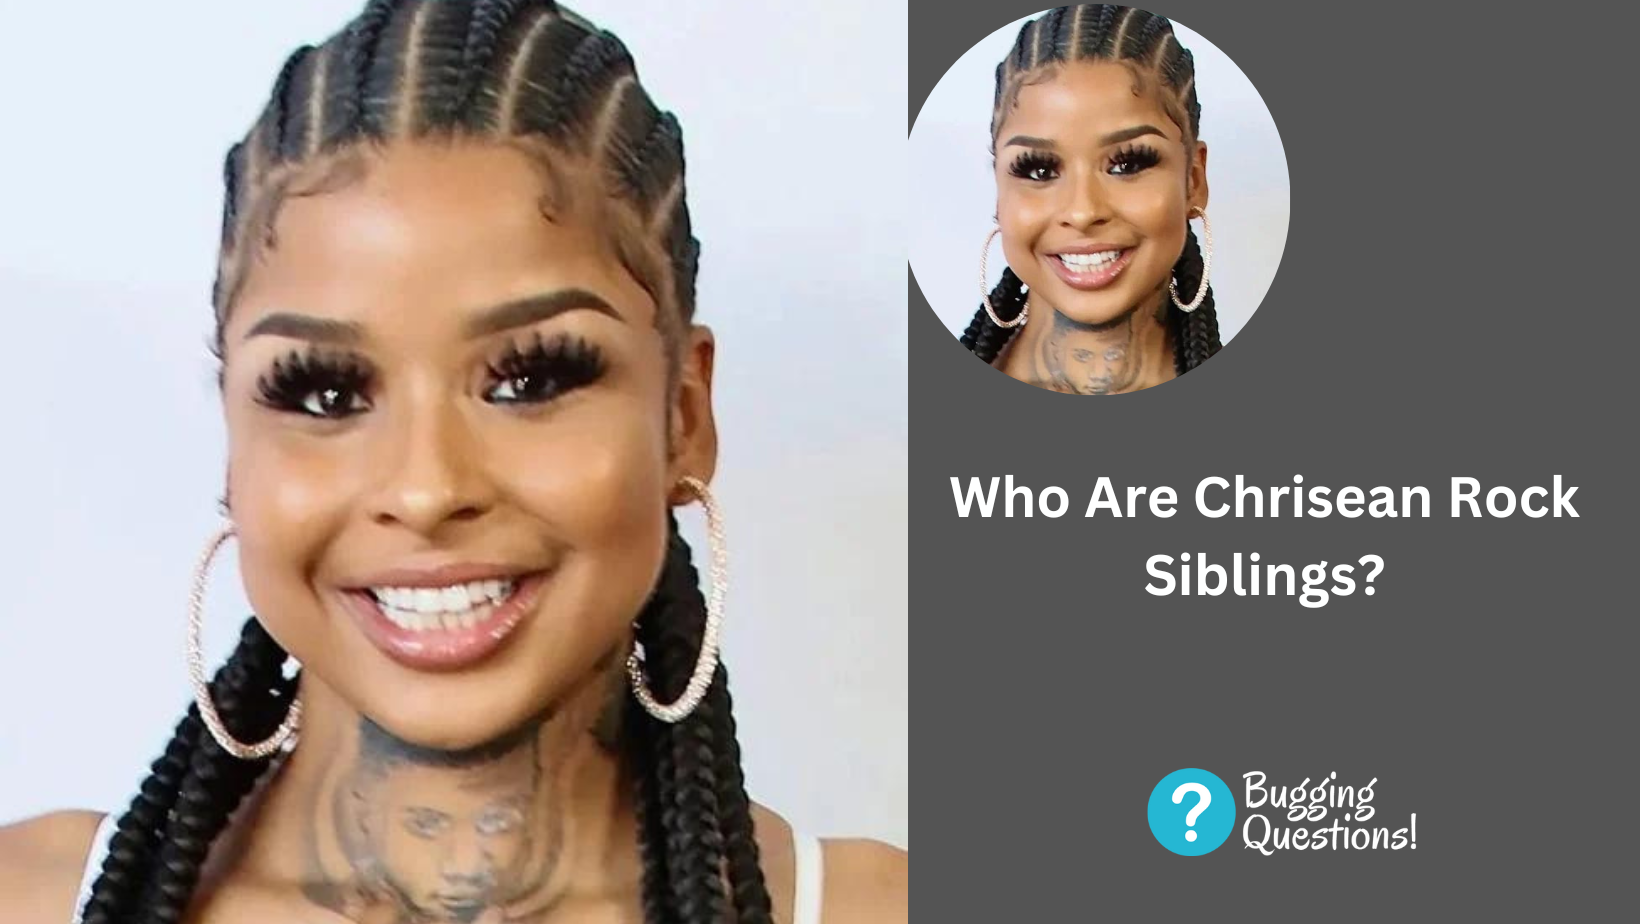 Who Are Chrisean Rock Siblings?